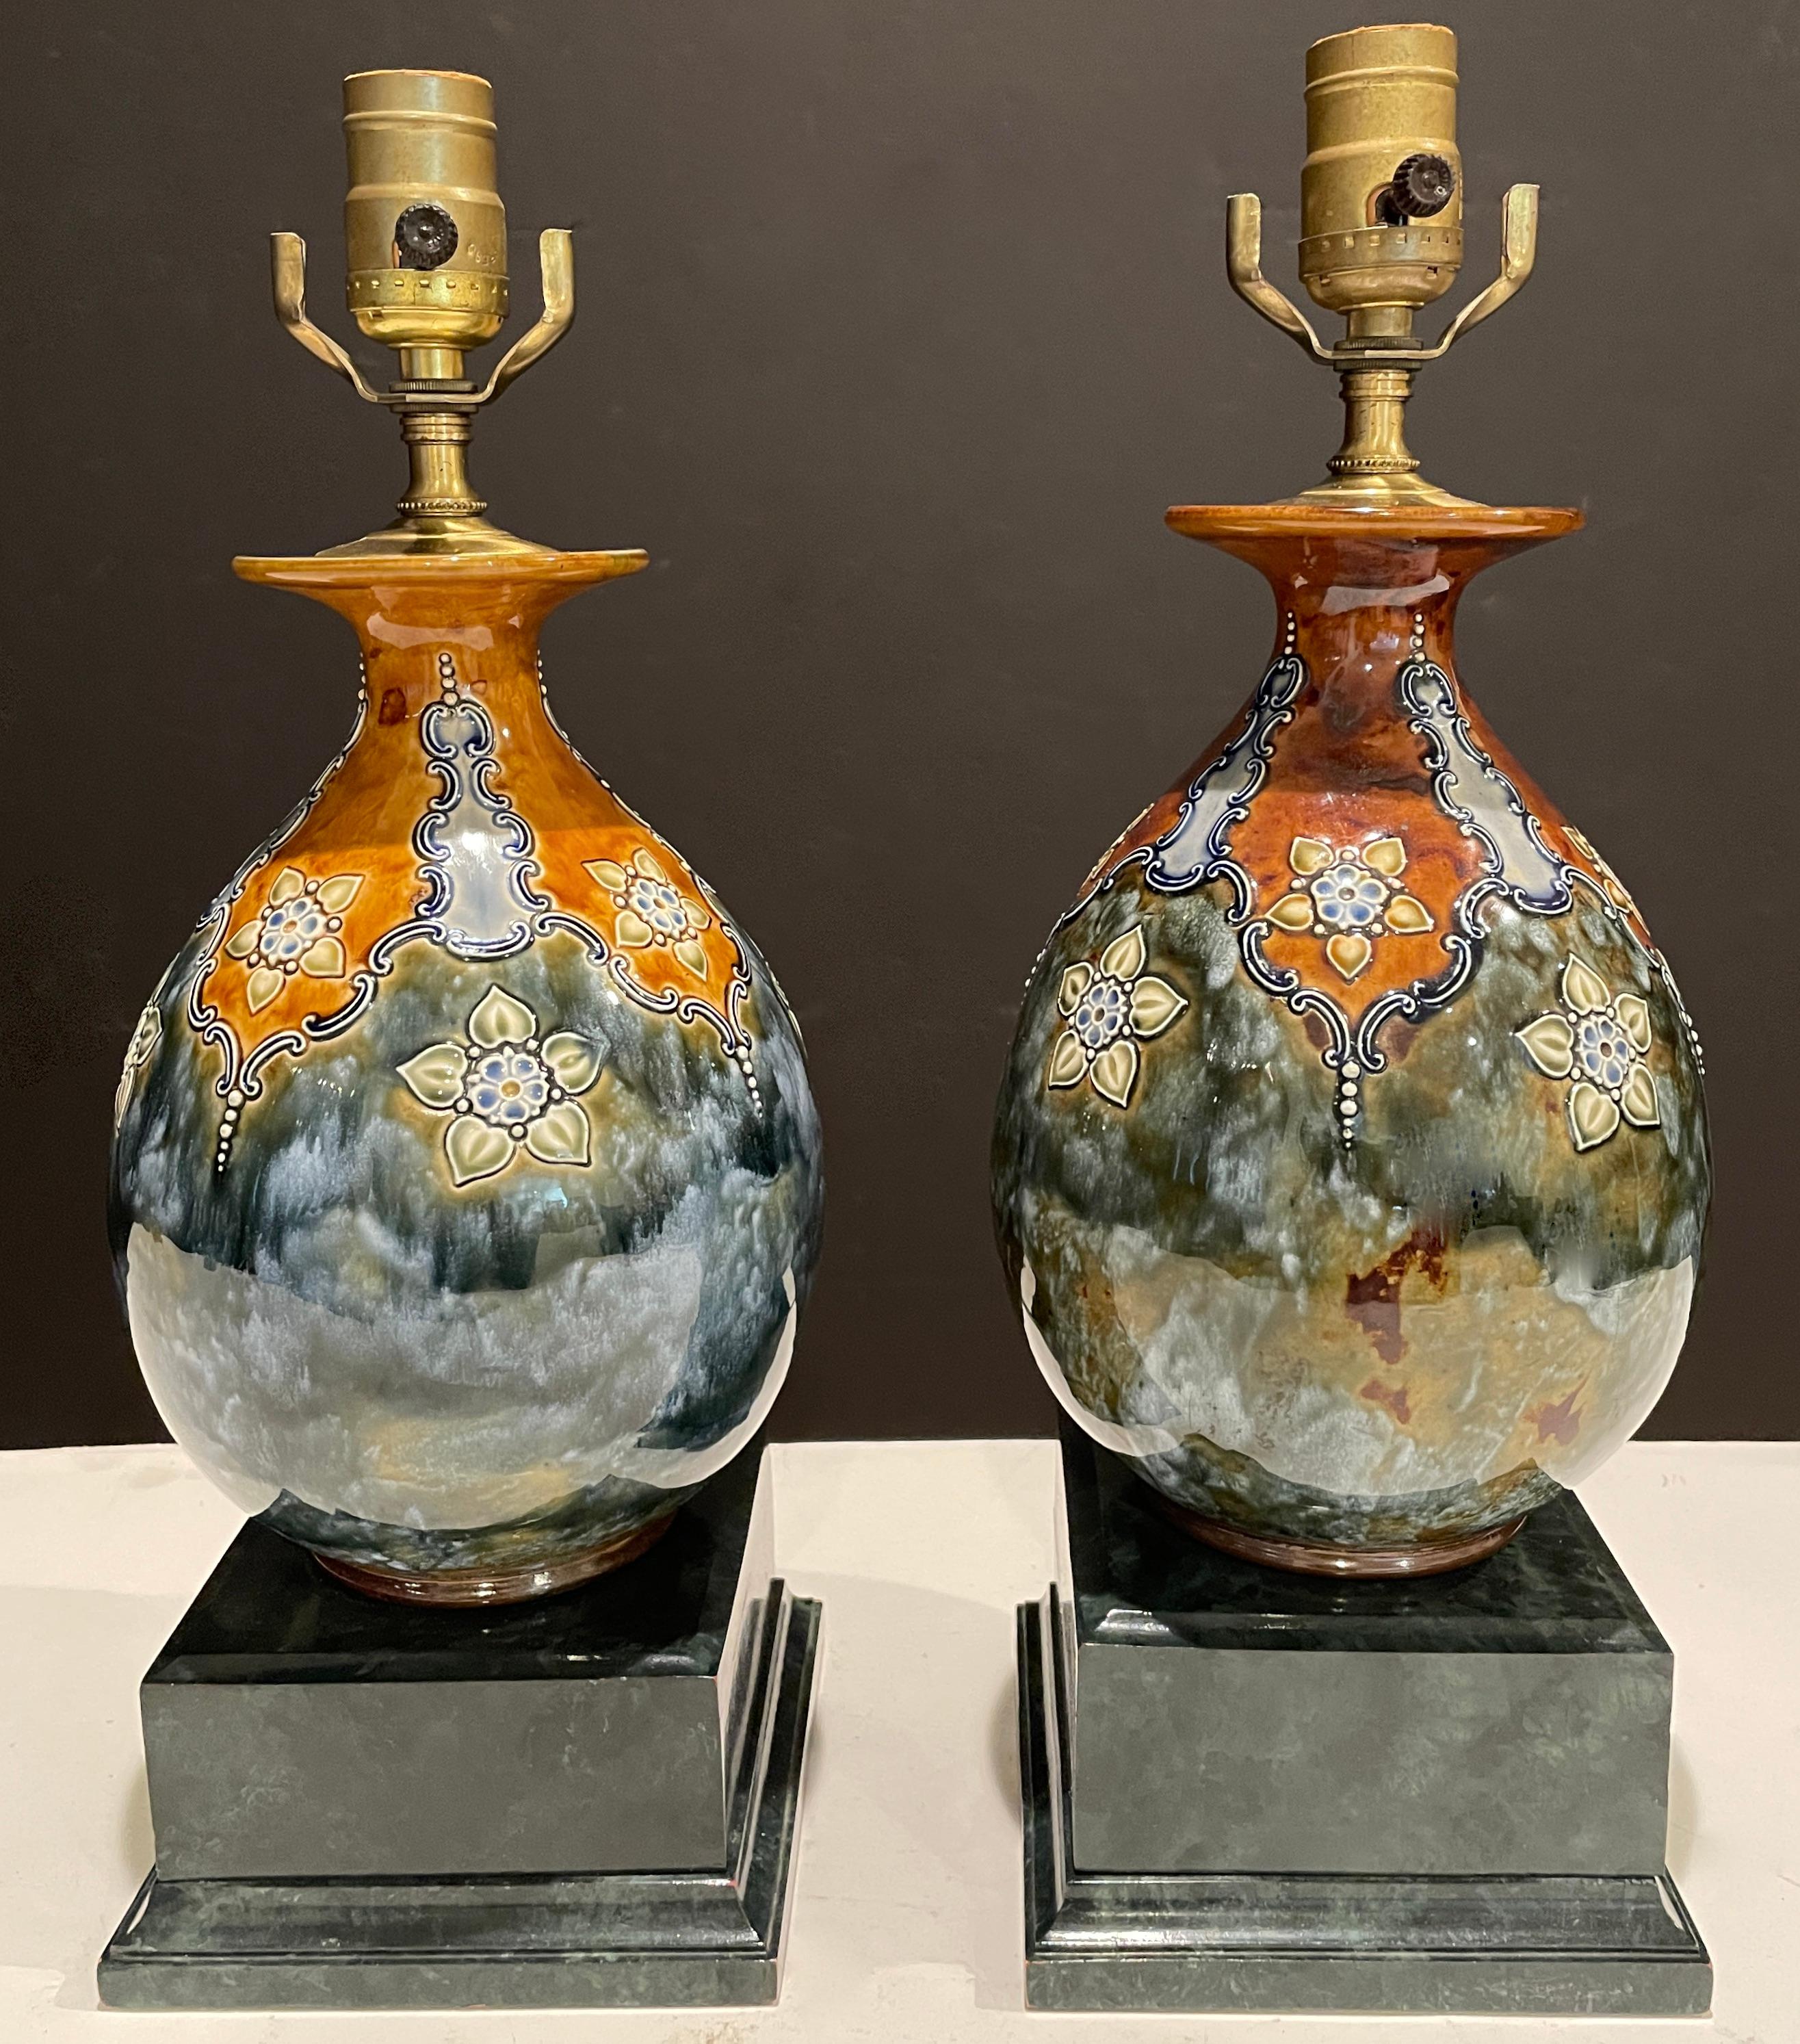 Ein Paar Royal Doulton Jugendstil-Steinzeugvasen als Lampen montiert. Außen blau-grau glasiert, mit erhabenem, stilisiertem Blumendekor in Grün- und Brauntönen. Erhöht auf einem marmorierten quadratischen Holzsockel.
24